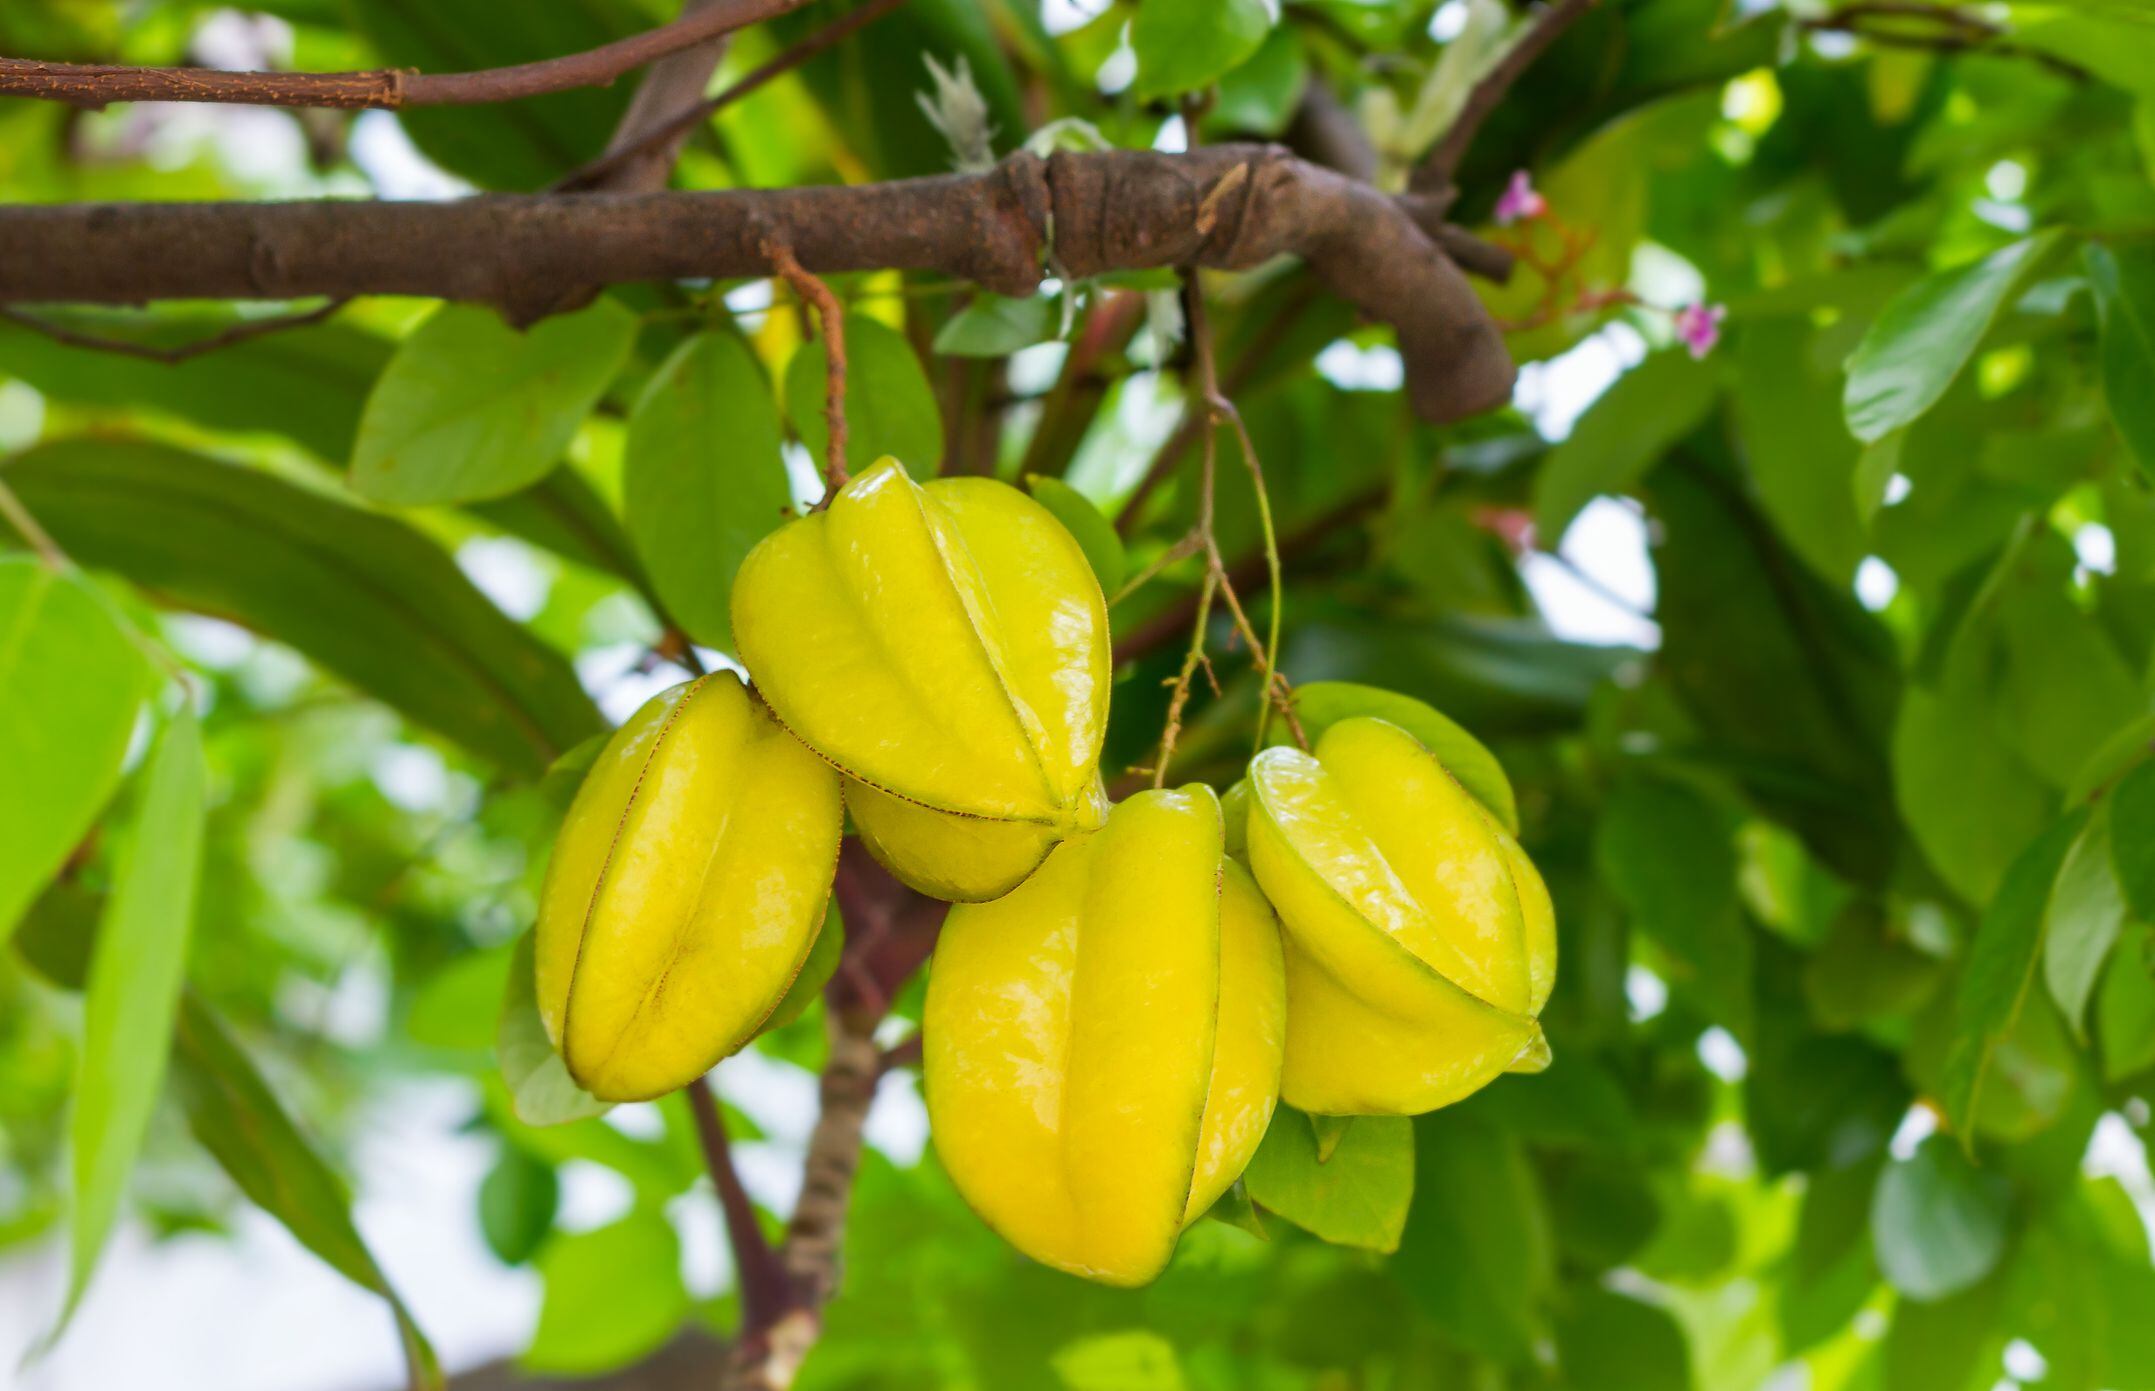 carambolo: beneficios de este fruto y sus contraindicaciones, según estudios